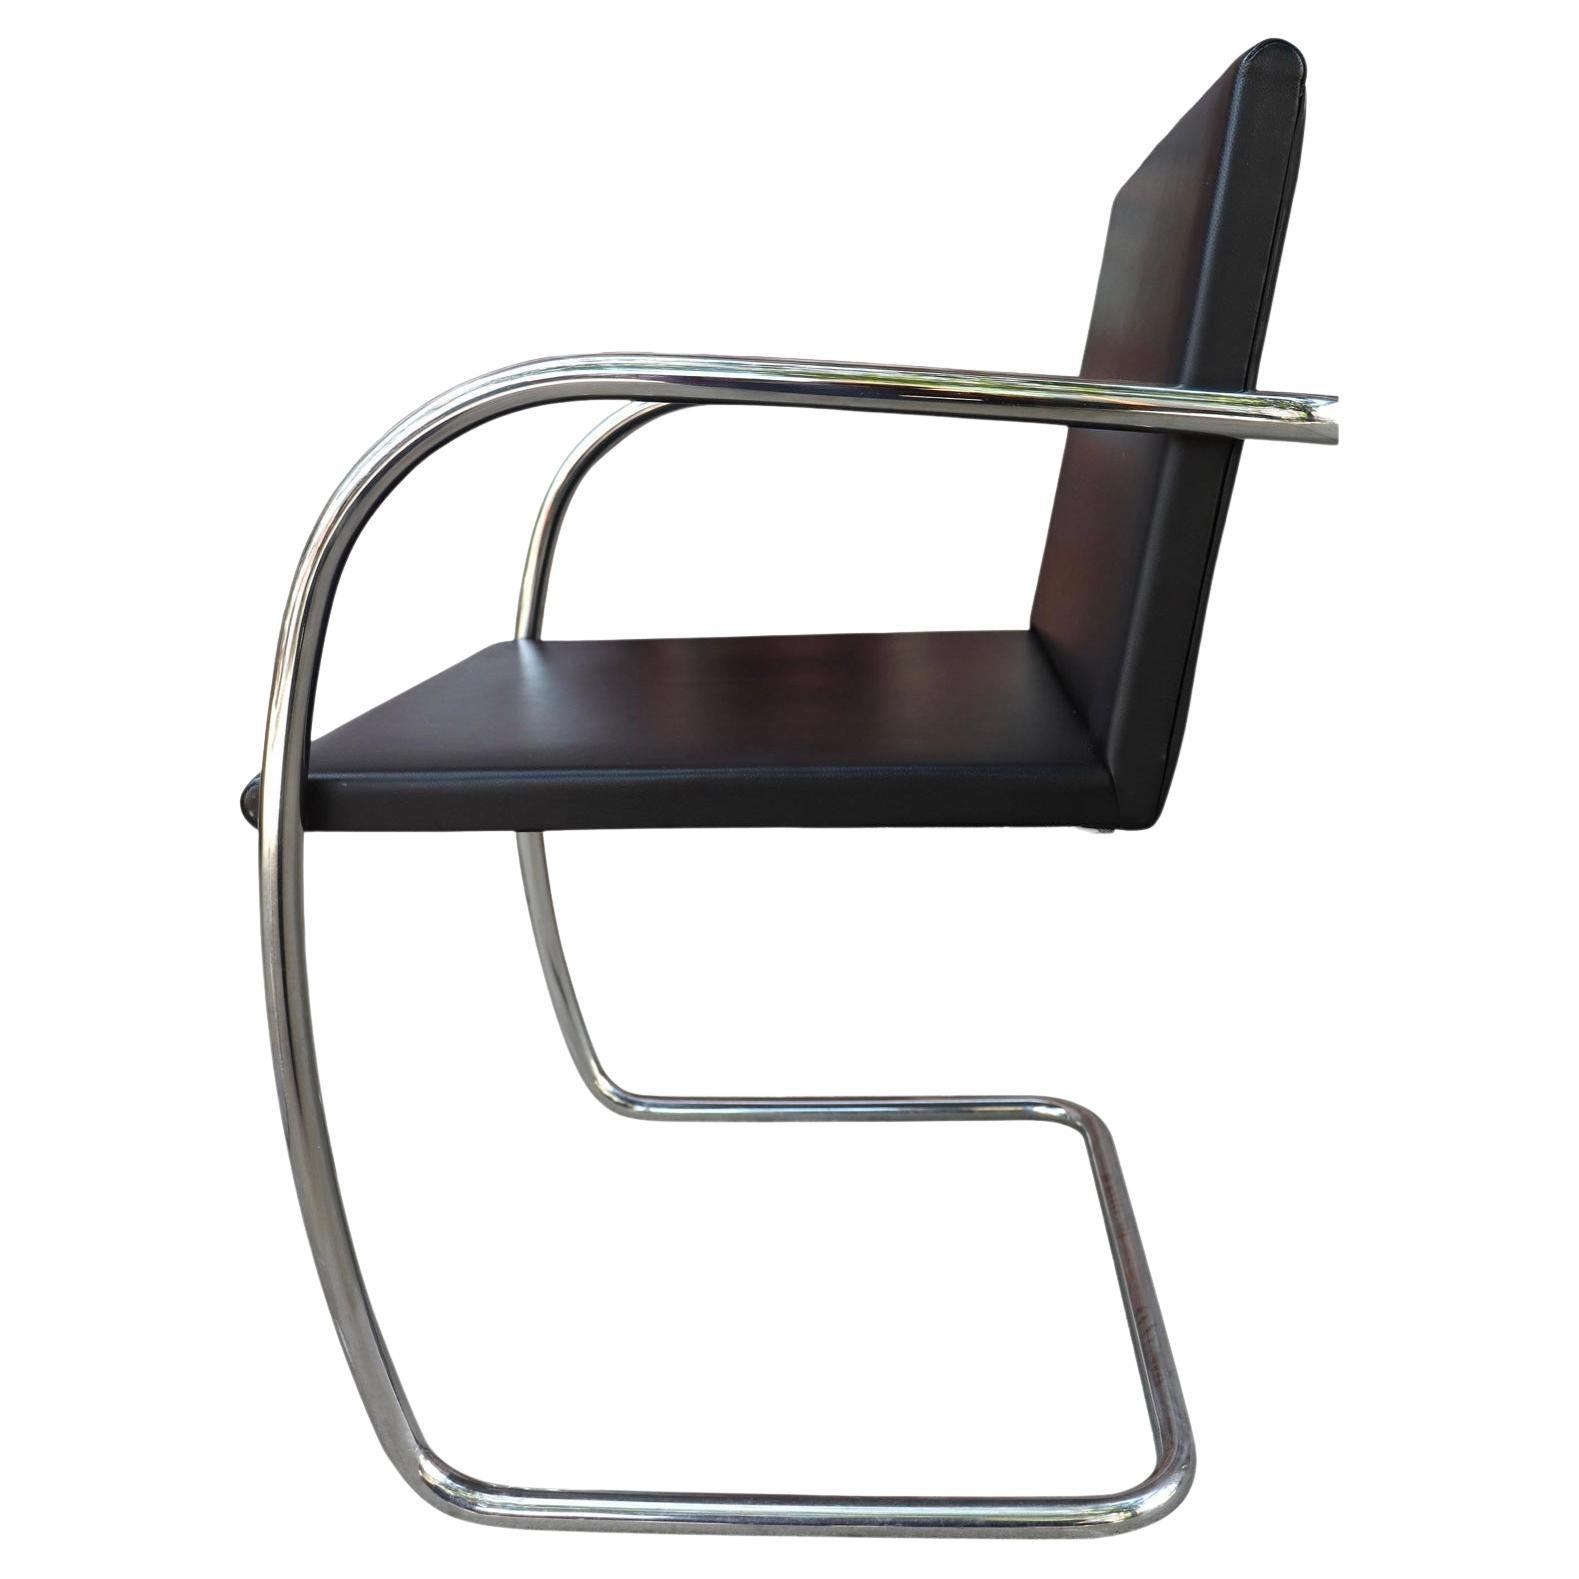 Une chaise Brno en cuir noir avec une structure tubulaire et une assise et un dossier en pad fin, comme c'était le cas à l'origine.

Ludwig Mies van der Rohe par Knoll. Magnifique et très peu utilisé.

Dimensions : hauteur du bras 27.5